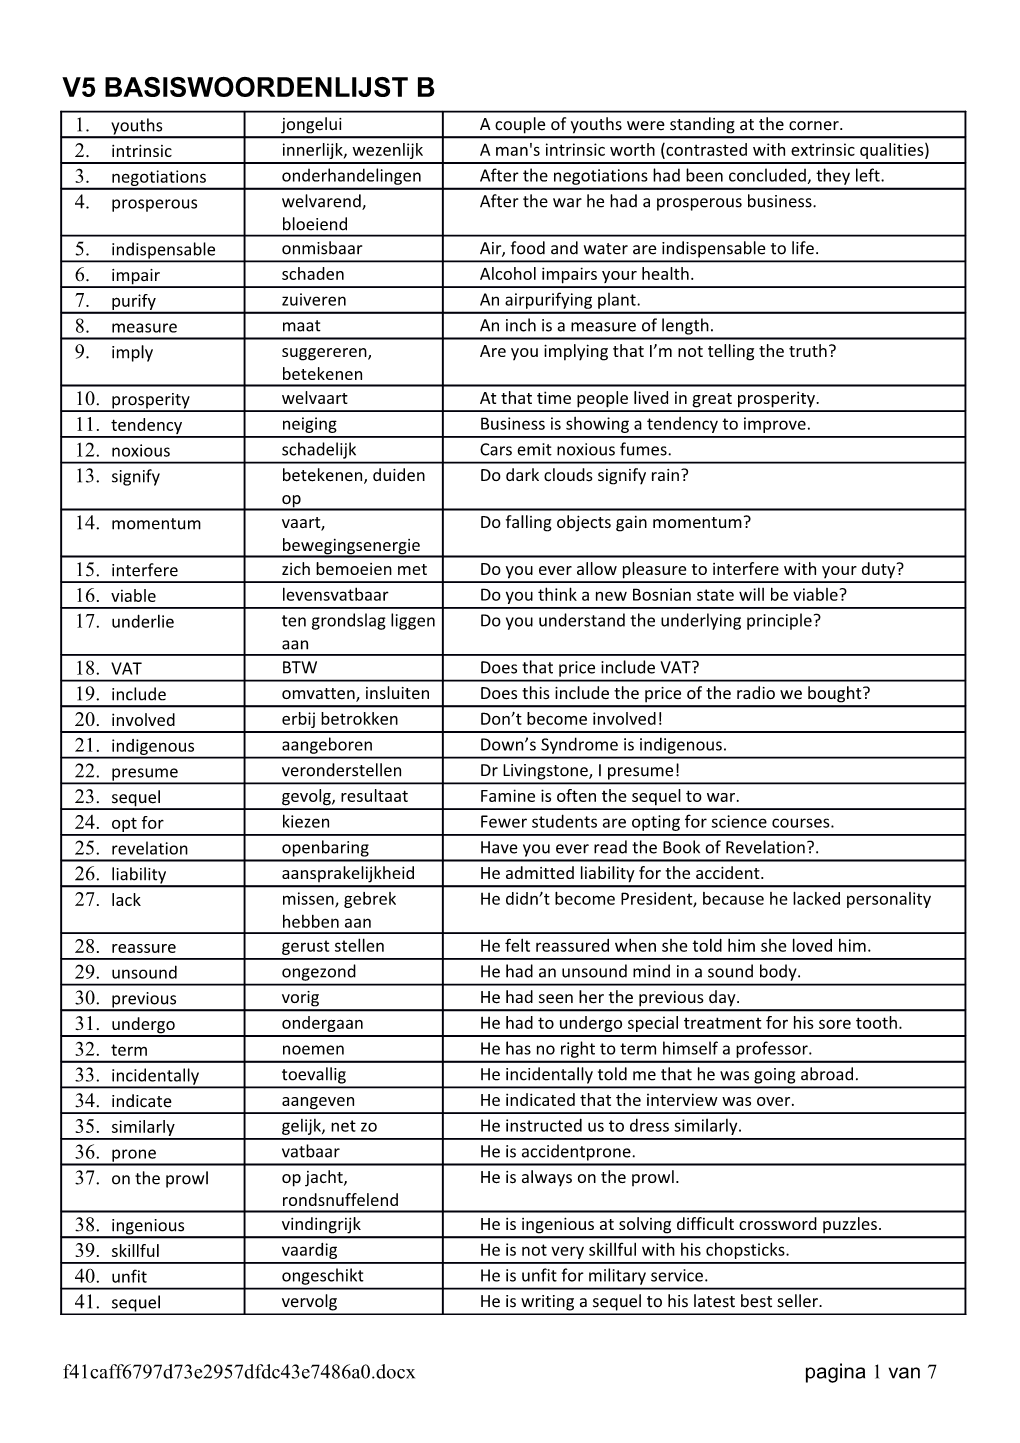 V5 Basiswoordenlijst B Pagina 1 Van 8